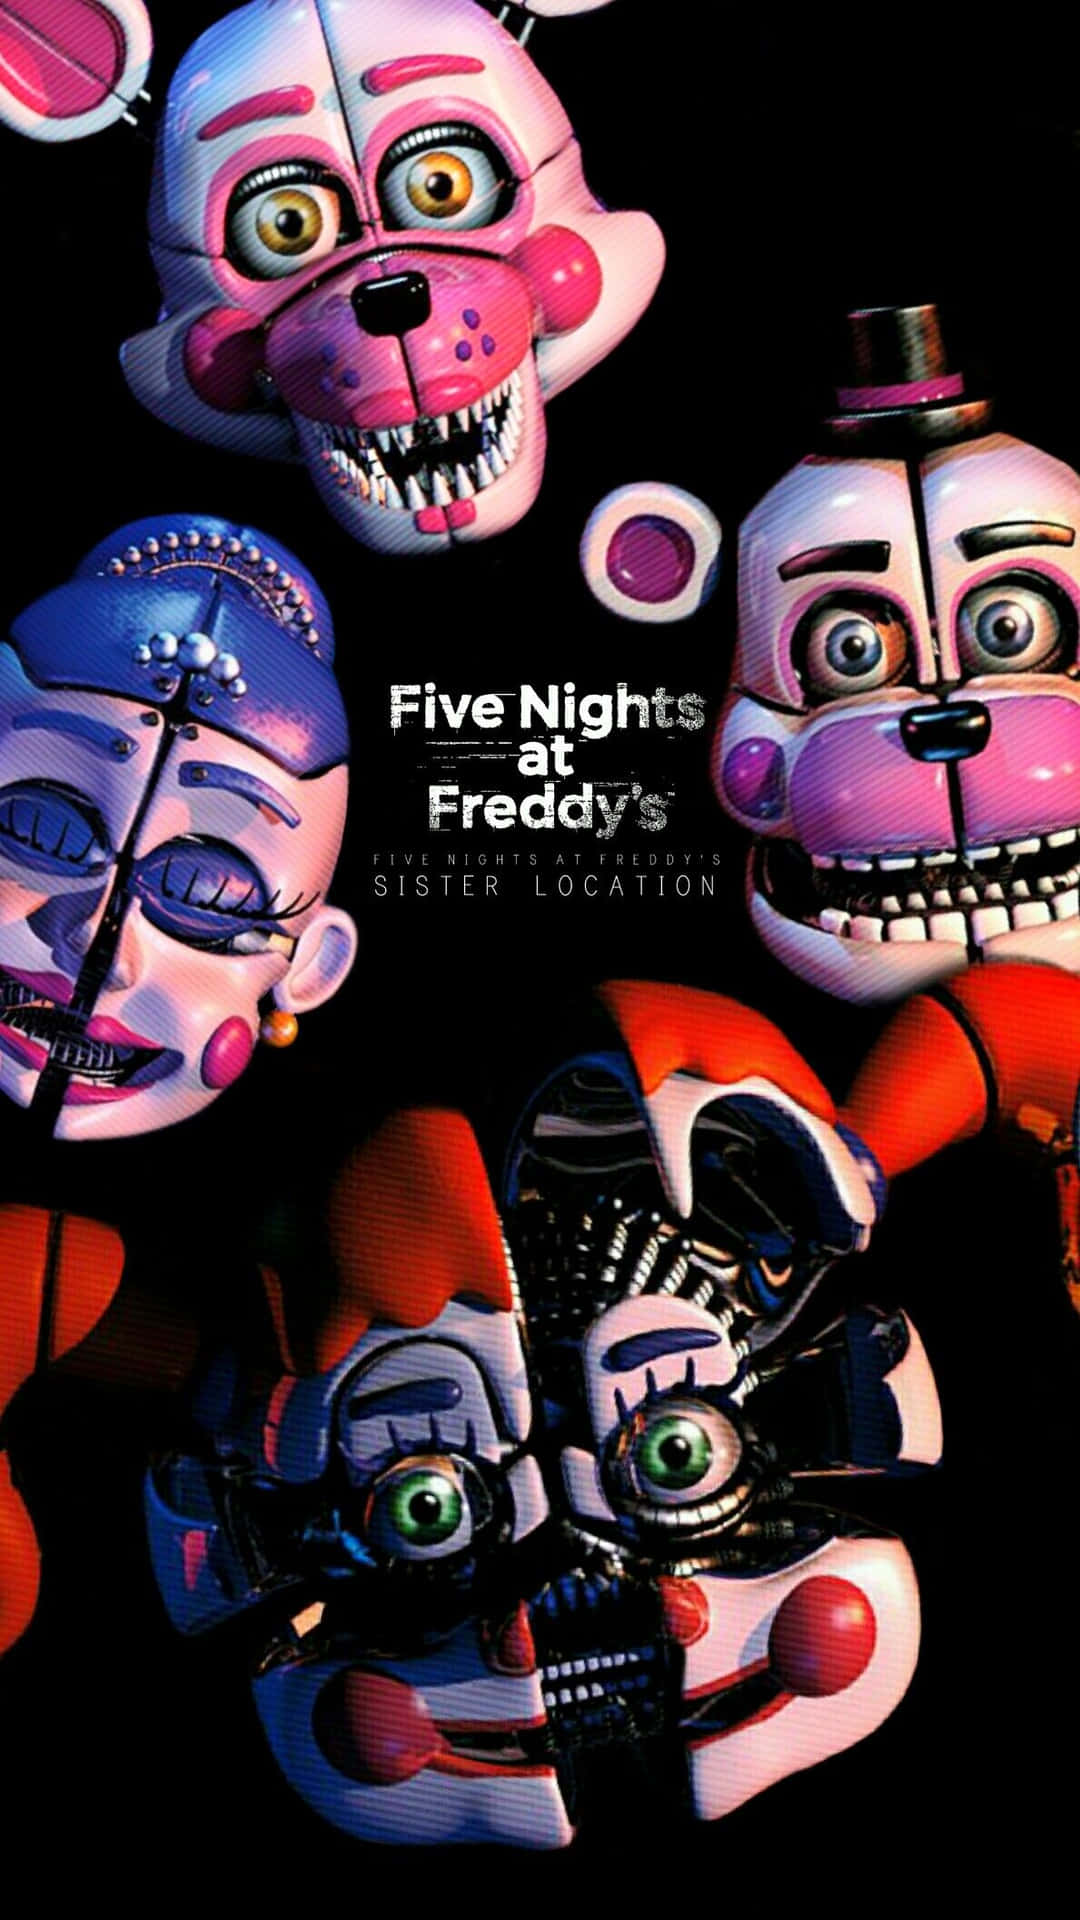 Femnätter På Freddy's - Fem Nätter På Freddy's - Pc